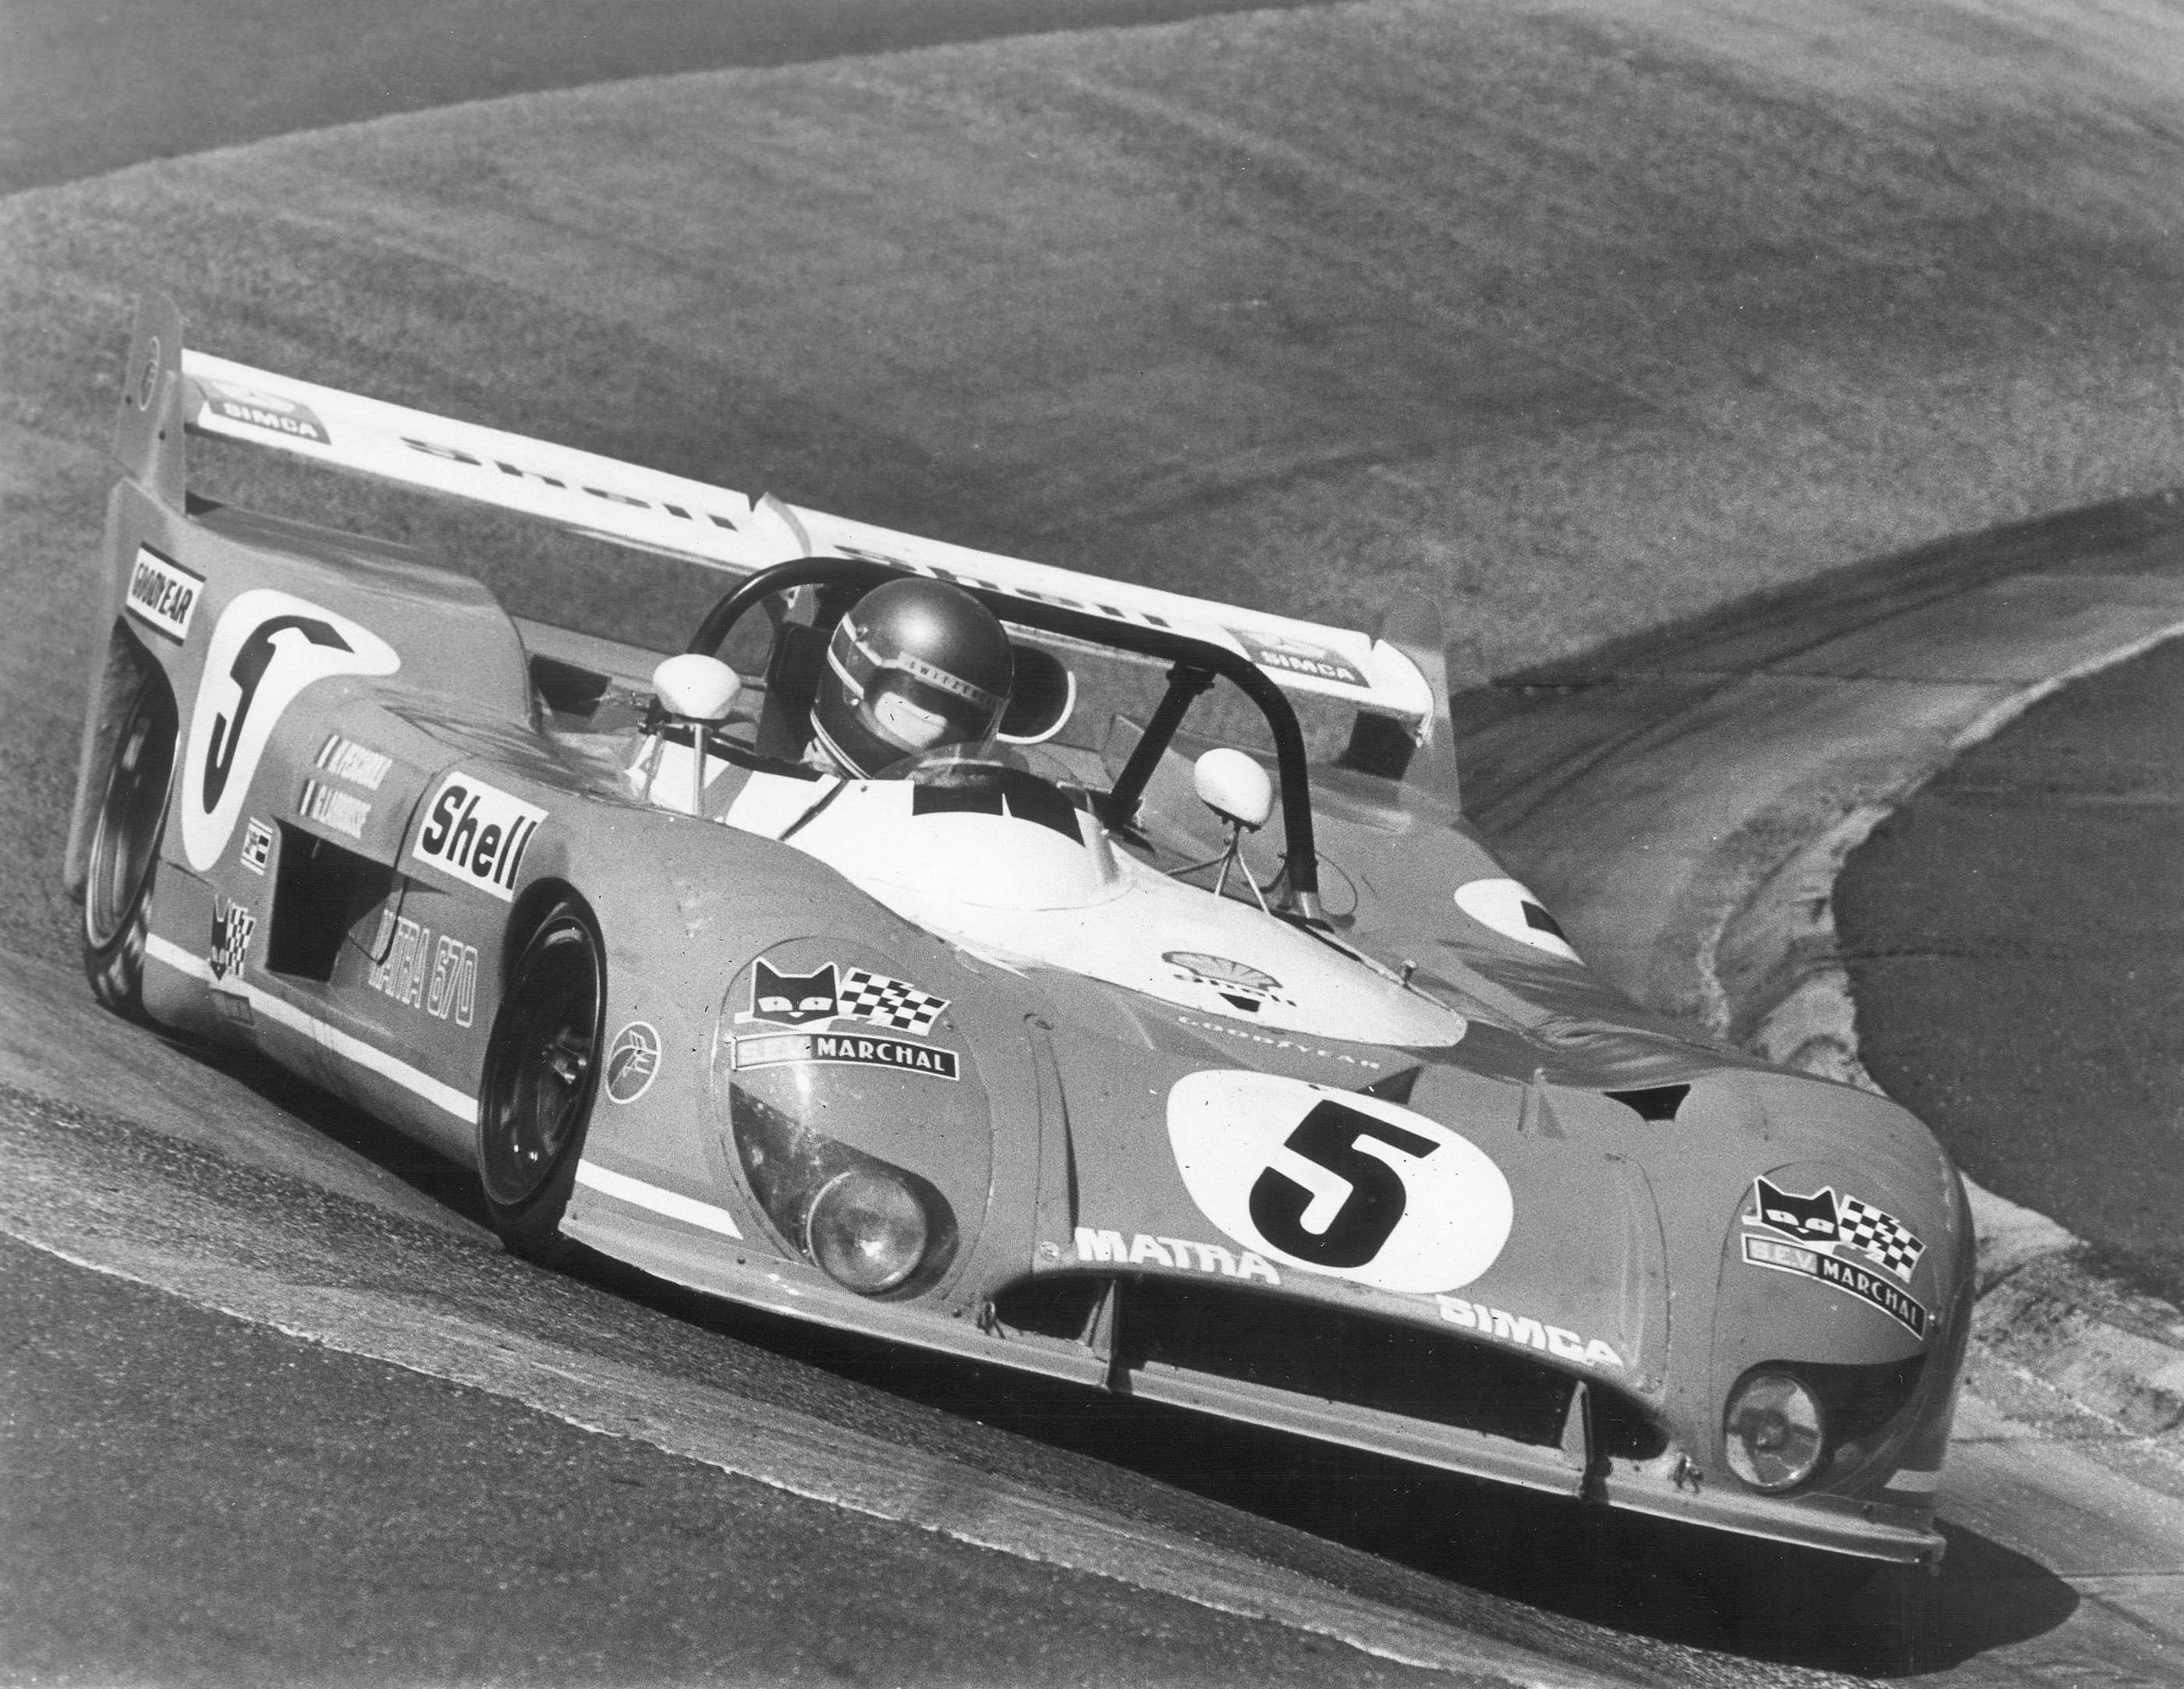 Matra attacking the carousel, Nurburgring 1,000km, 1973.